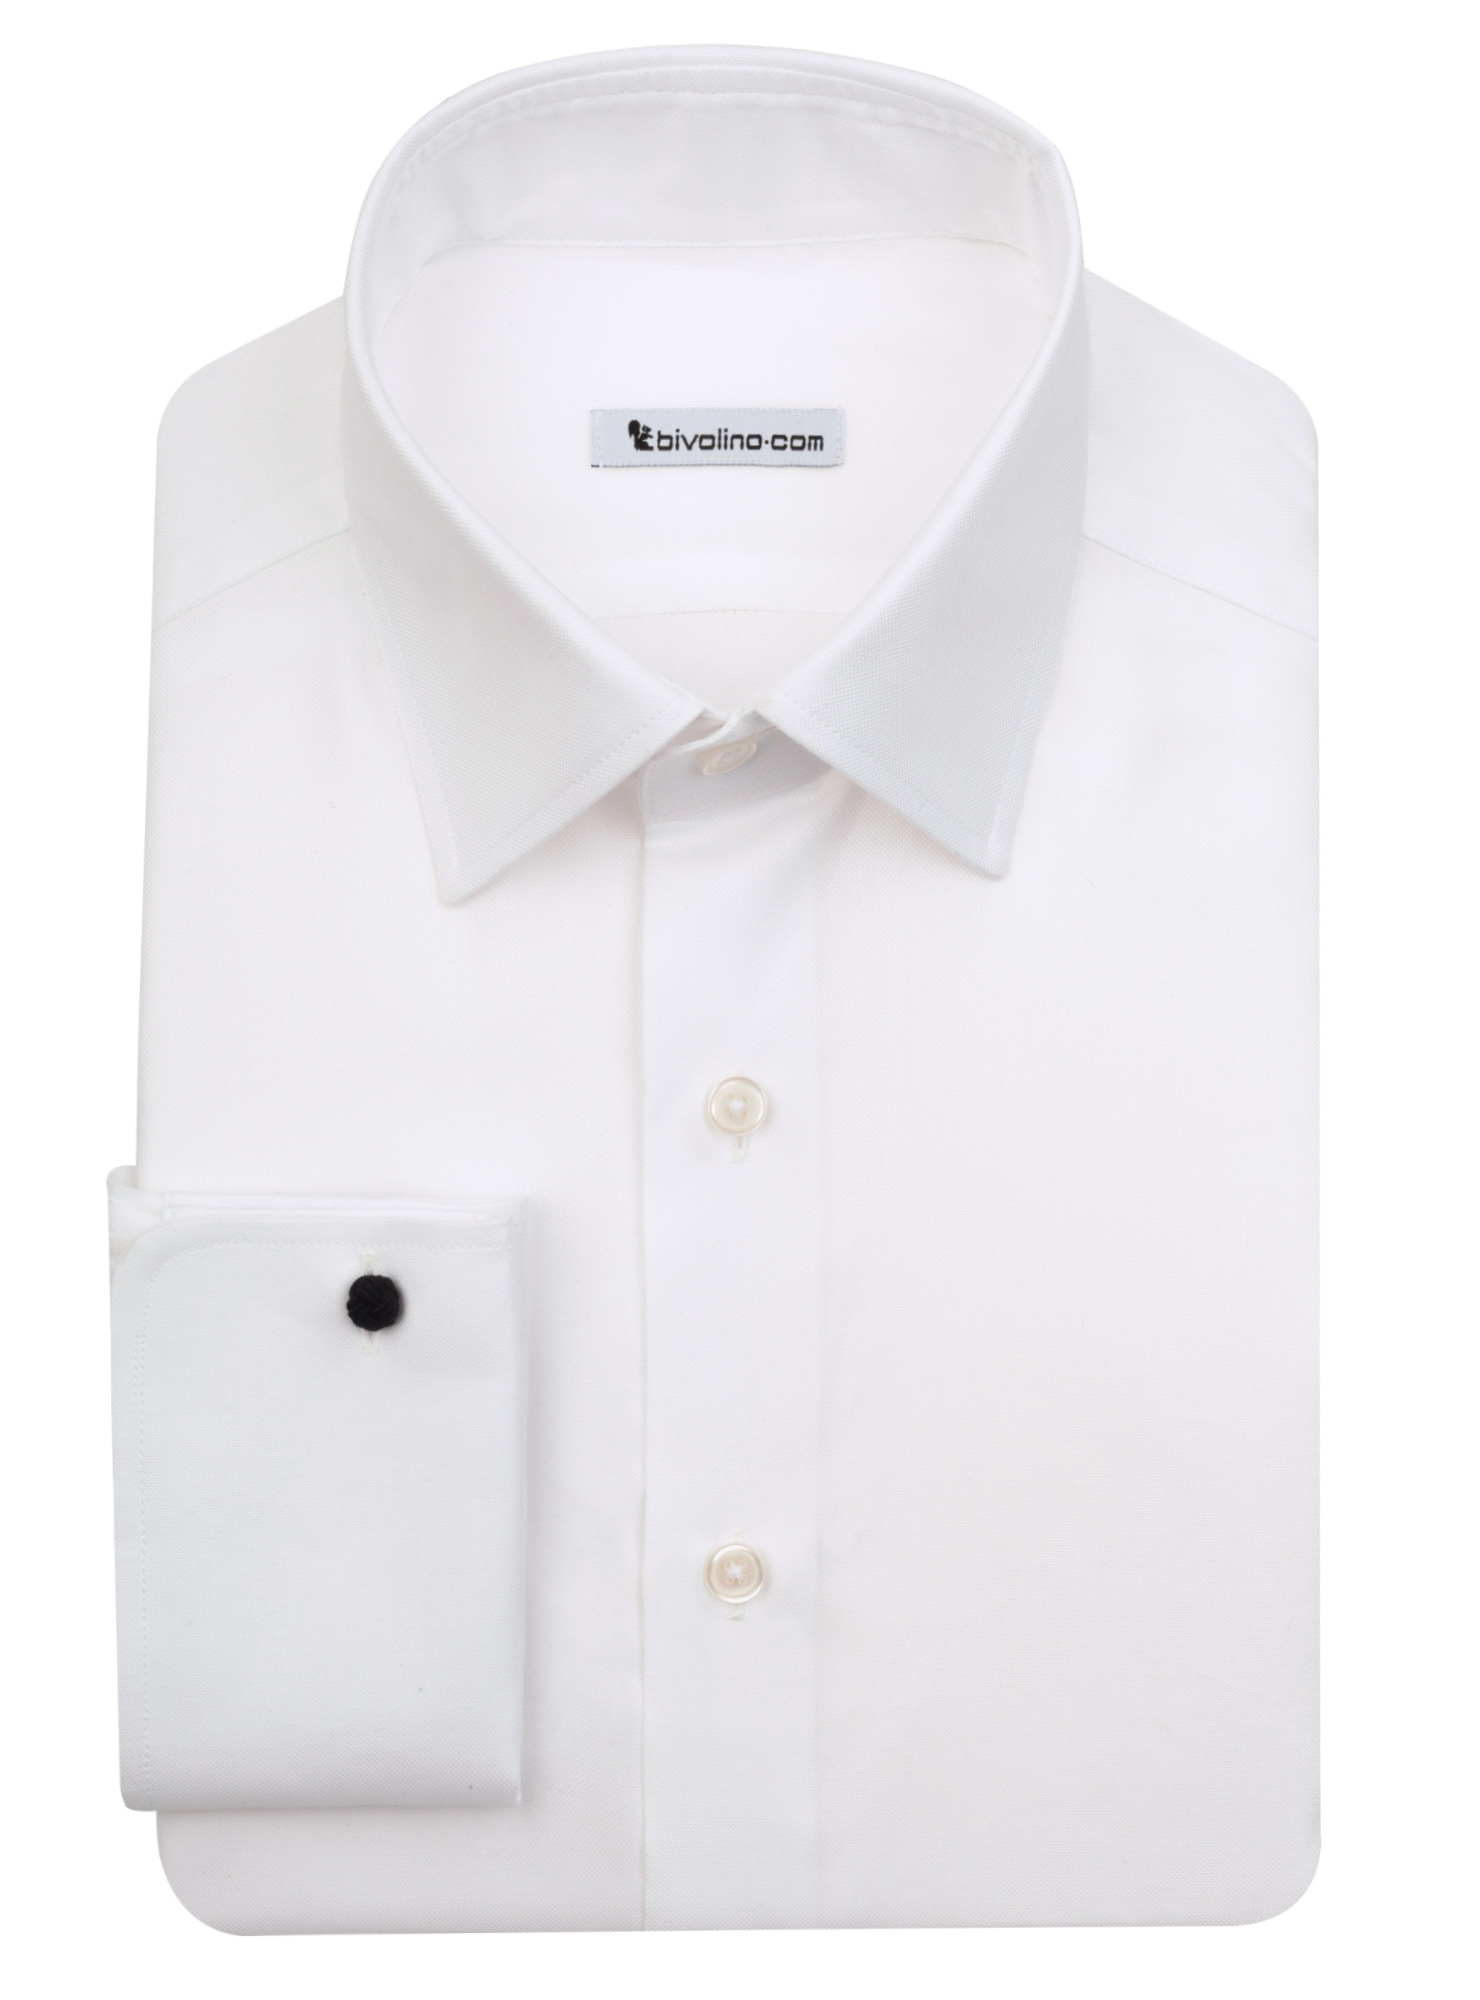 TRENTO - royal oxford white cotton shirt - LABA 2 